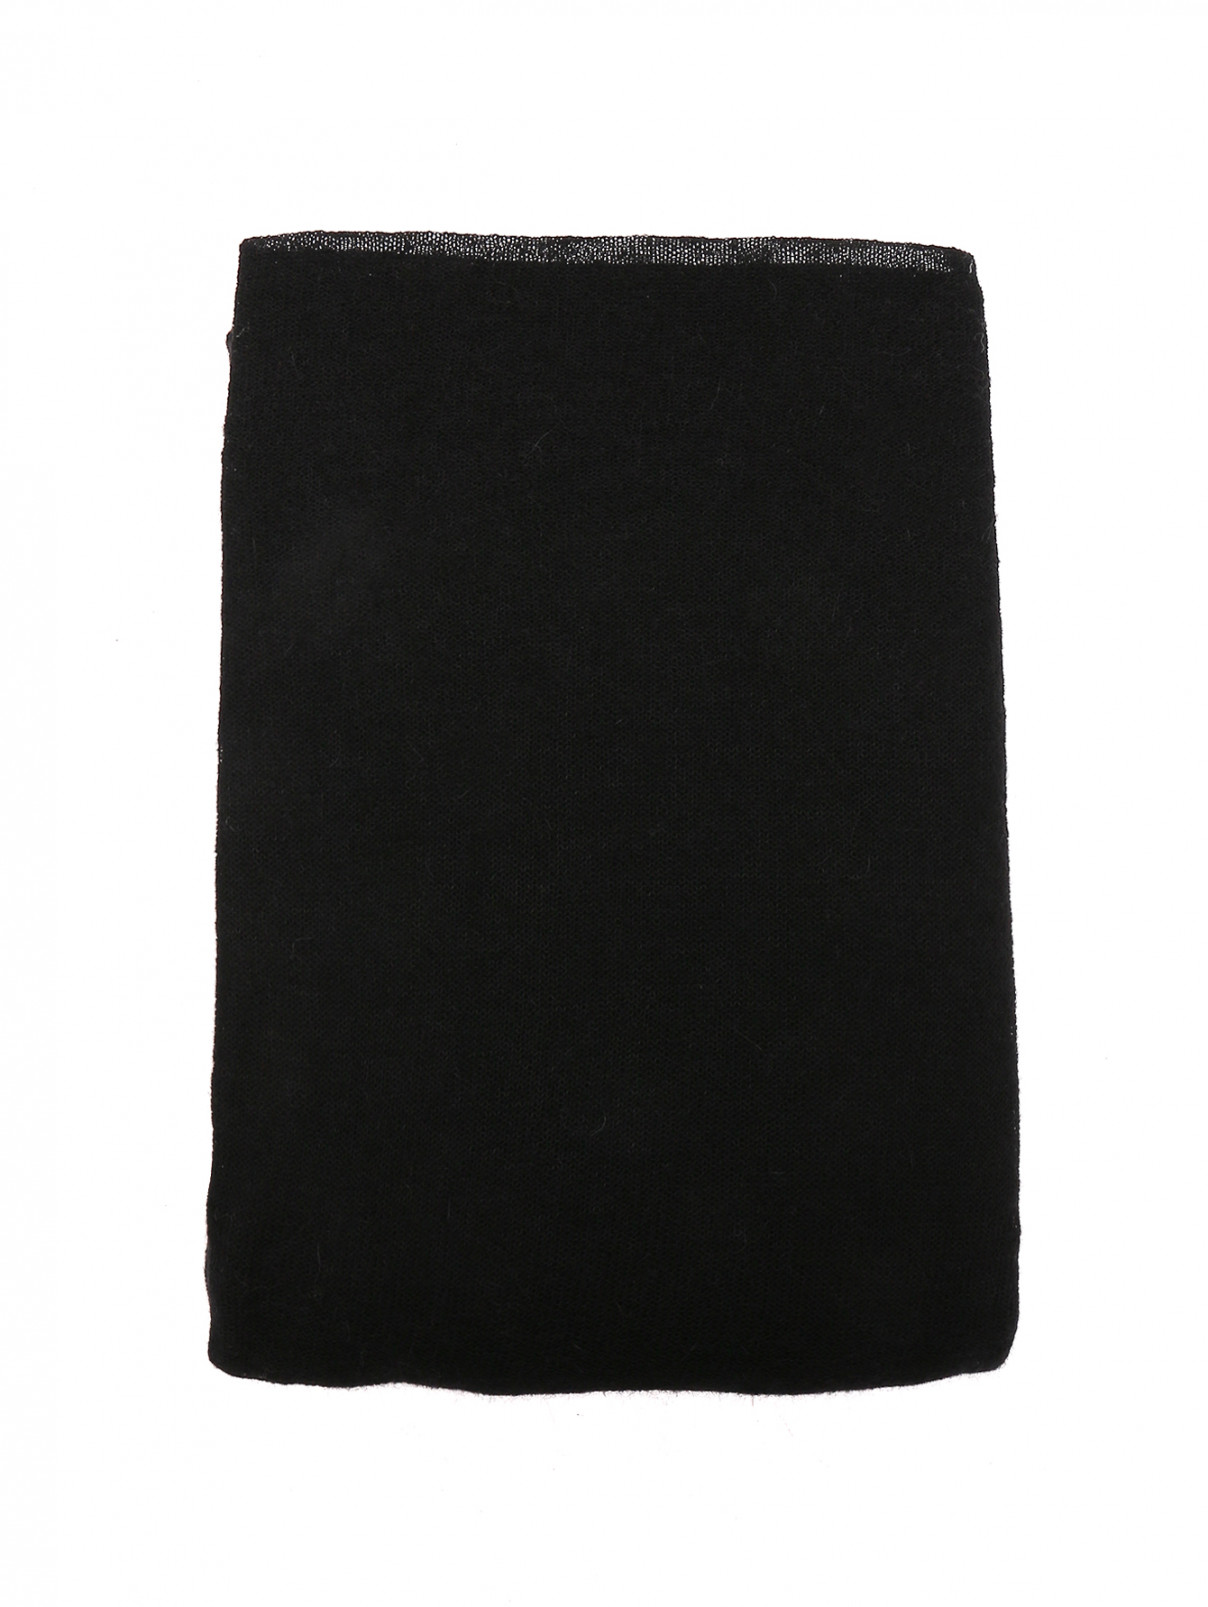 Шарф из смешанной шерсти с кружевной аппликацией Ermanno Scervino  –  Общий вид  – Цвет:  Черный